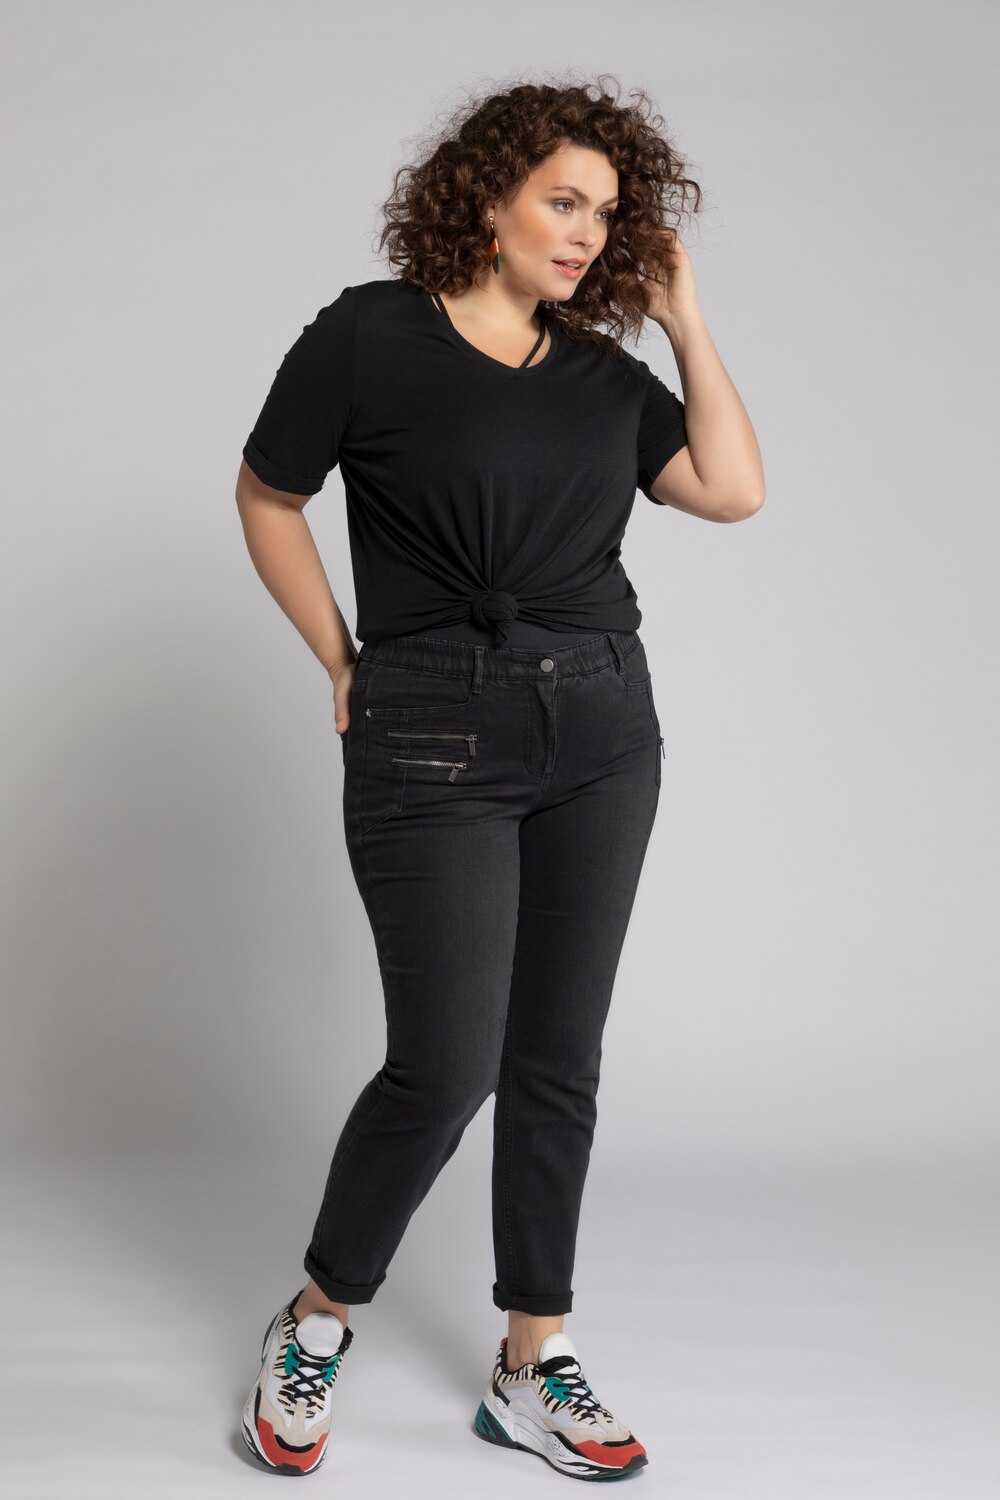 Grote Maten jeans Sarah, Dames, zwart, Maat: 100, Katoen/Polyester/Synthetische vezels, Ulla Popken